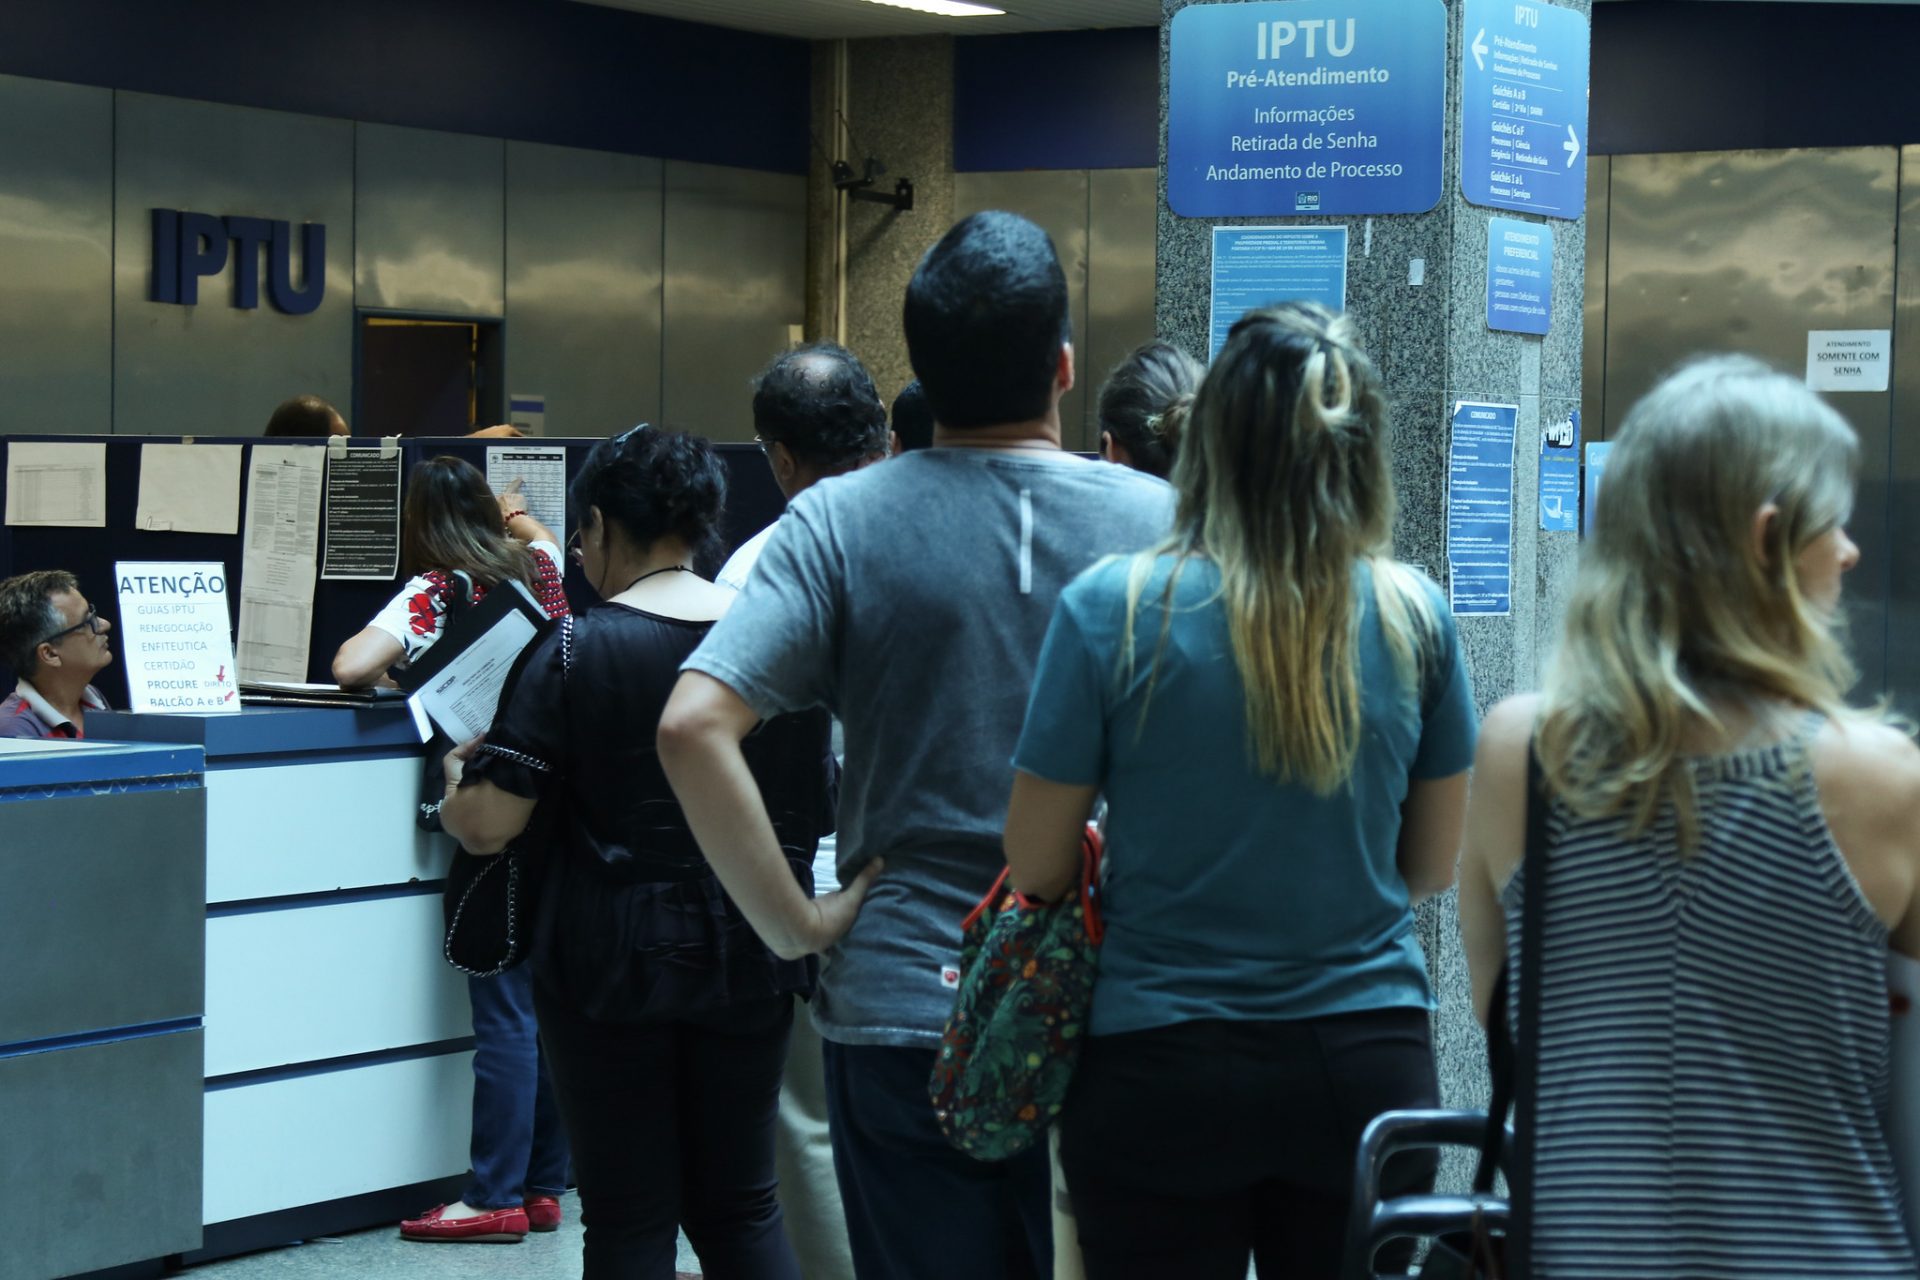 Contribuinte pode parcelar IPTU em até 12 vezes no cartão de crédito -  Prefeitura da Cidade do Rio de Janeiro 